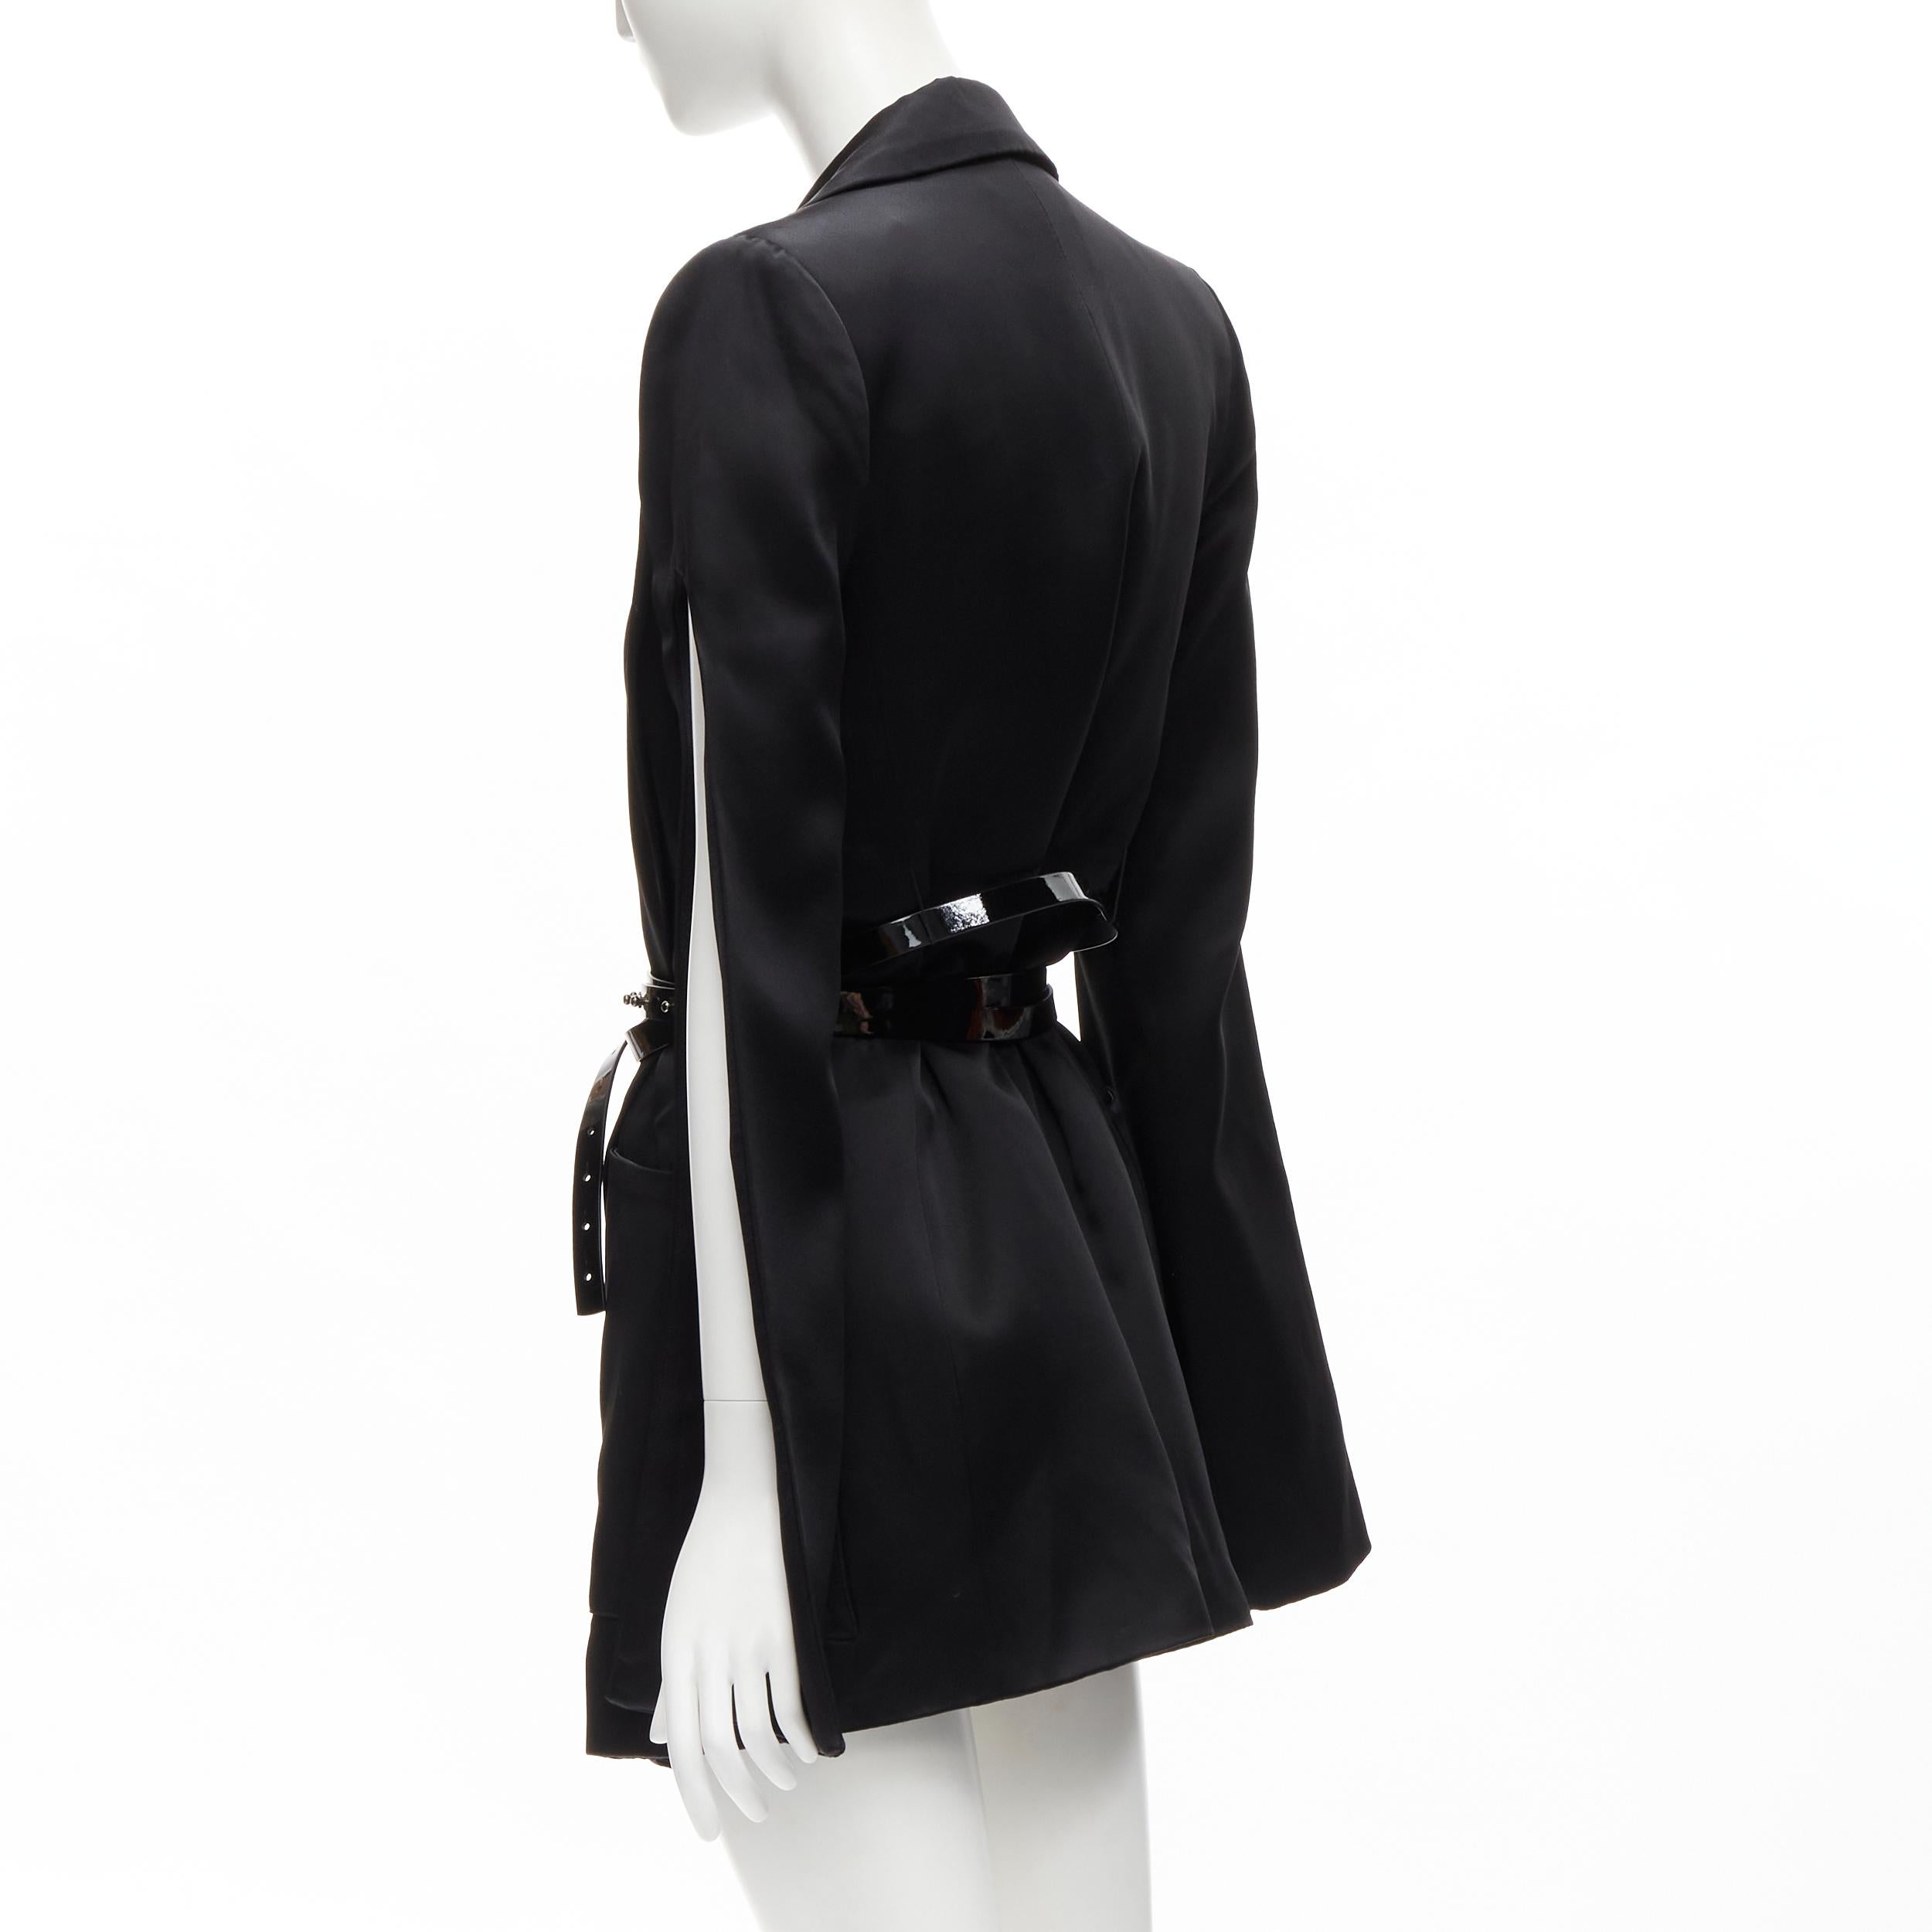 MATICEVSKI 2019 Firmament black slit sleeve plunge belted blazer vest AUS8 M 2